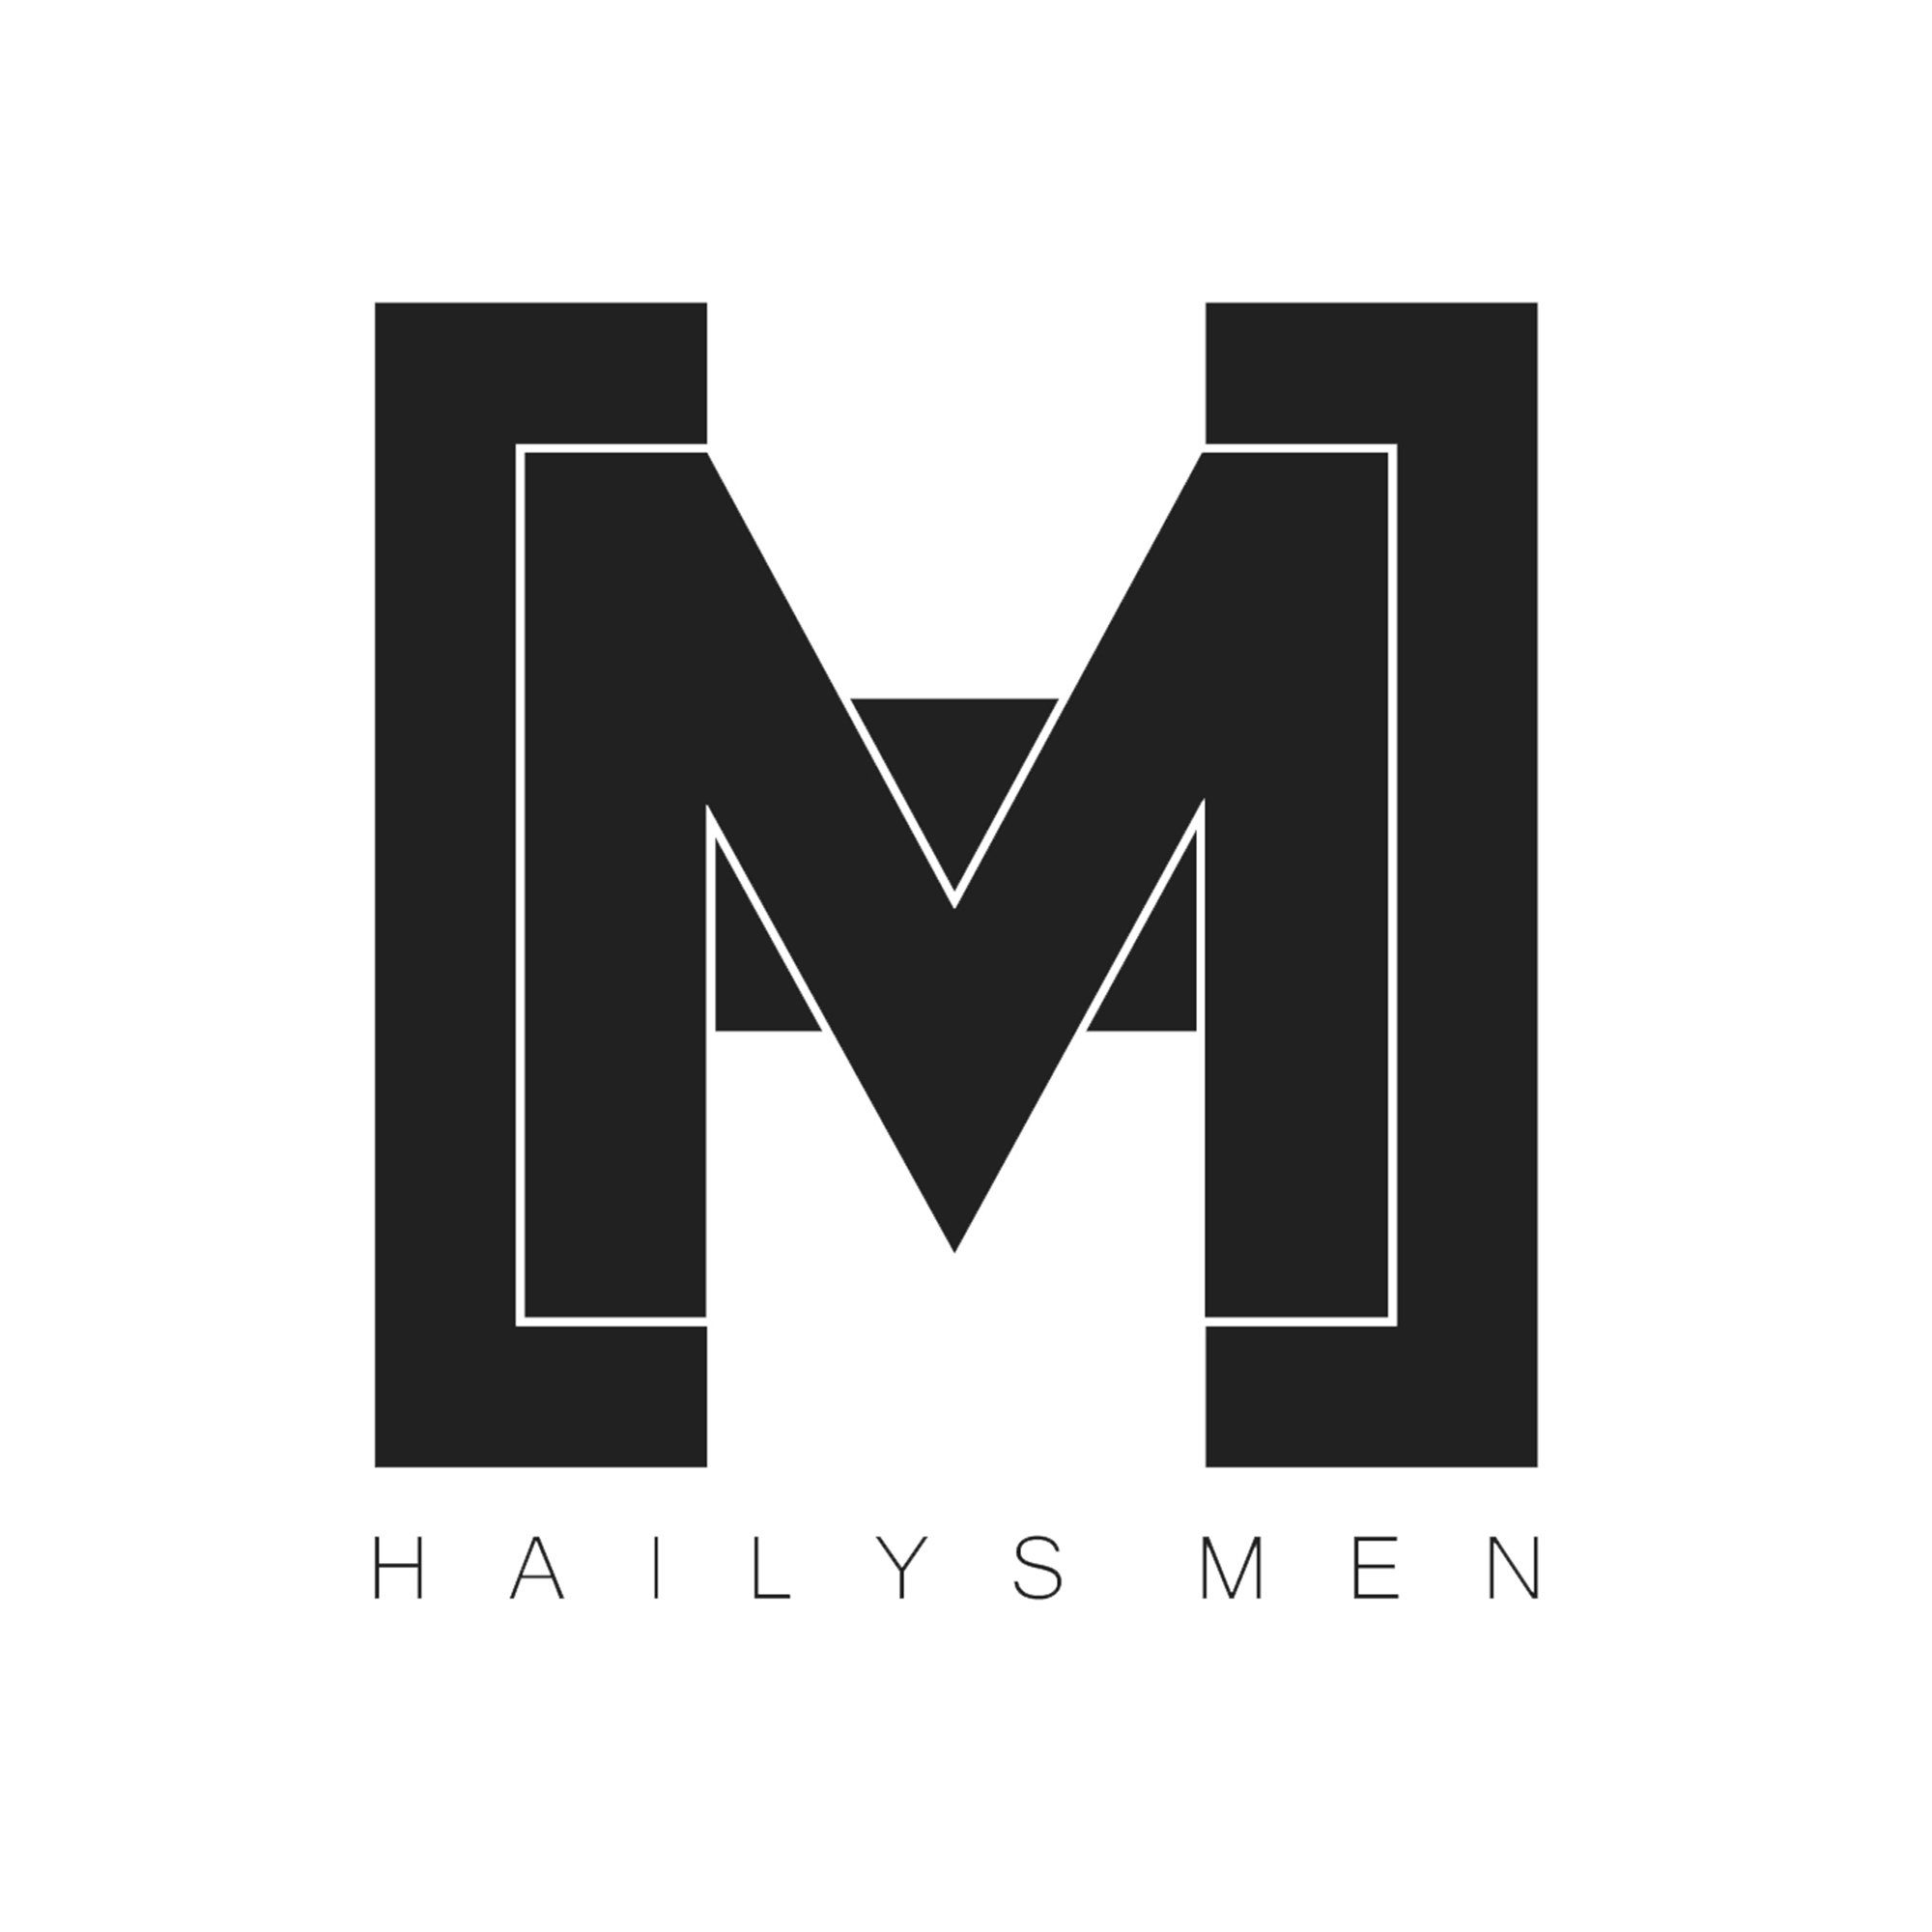 Hailys Men